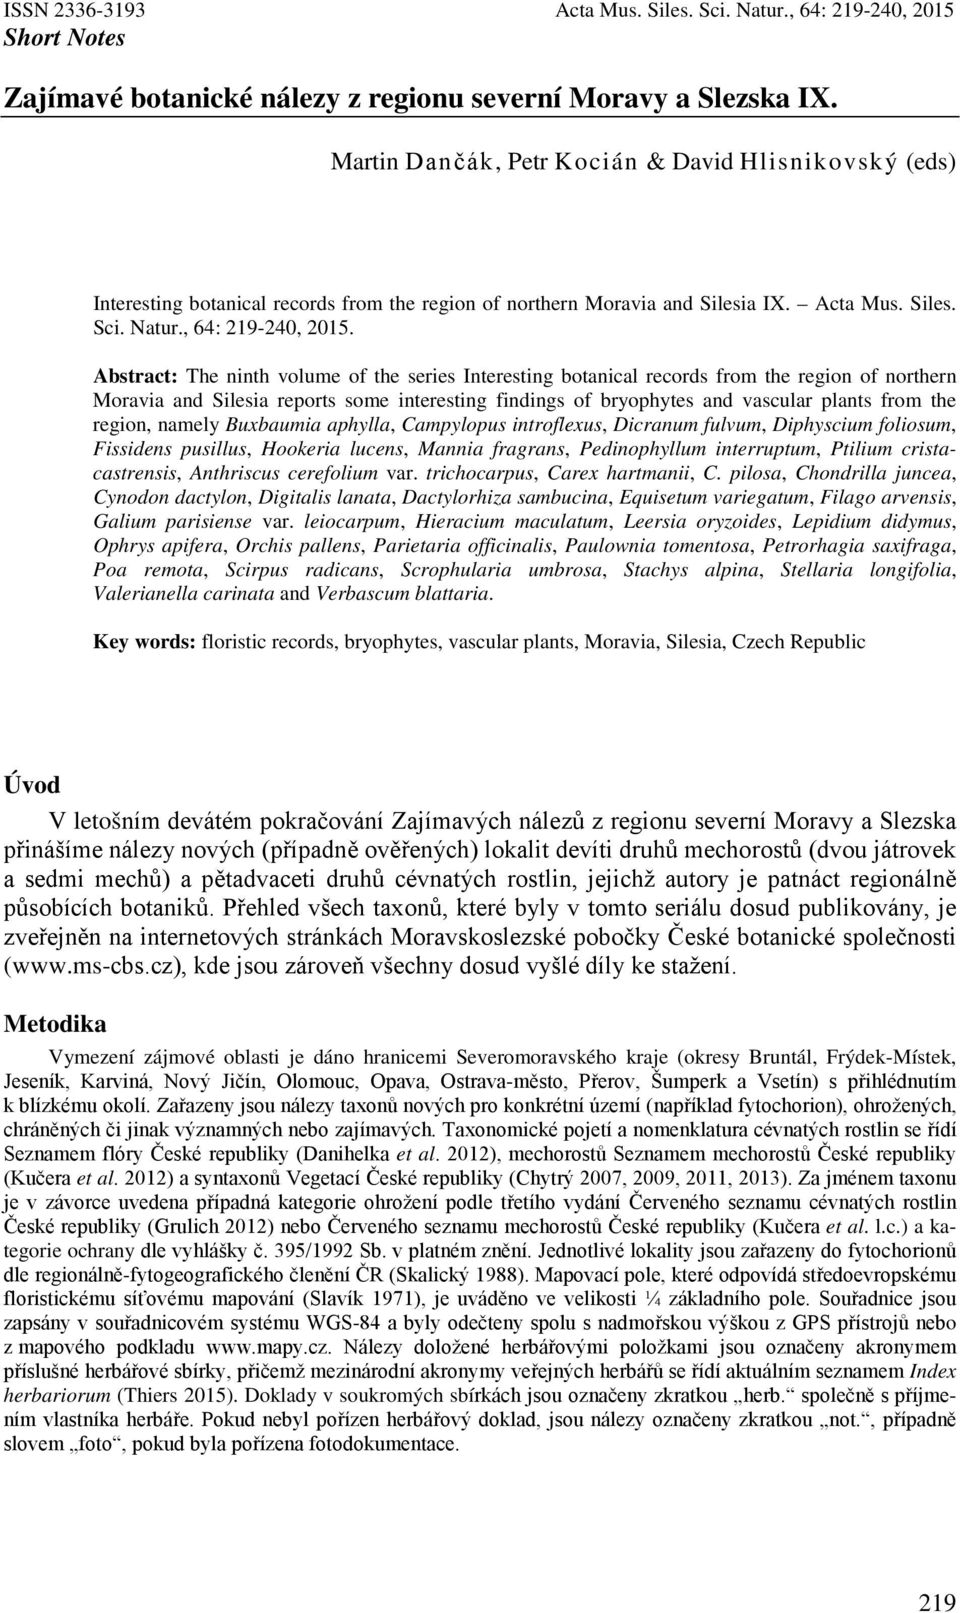 Zajímavé botanické nálezy z regionu severní Moravy a Slezska IX. - PDF  Stažení zdarma